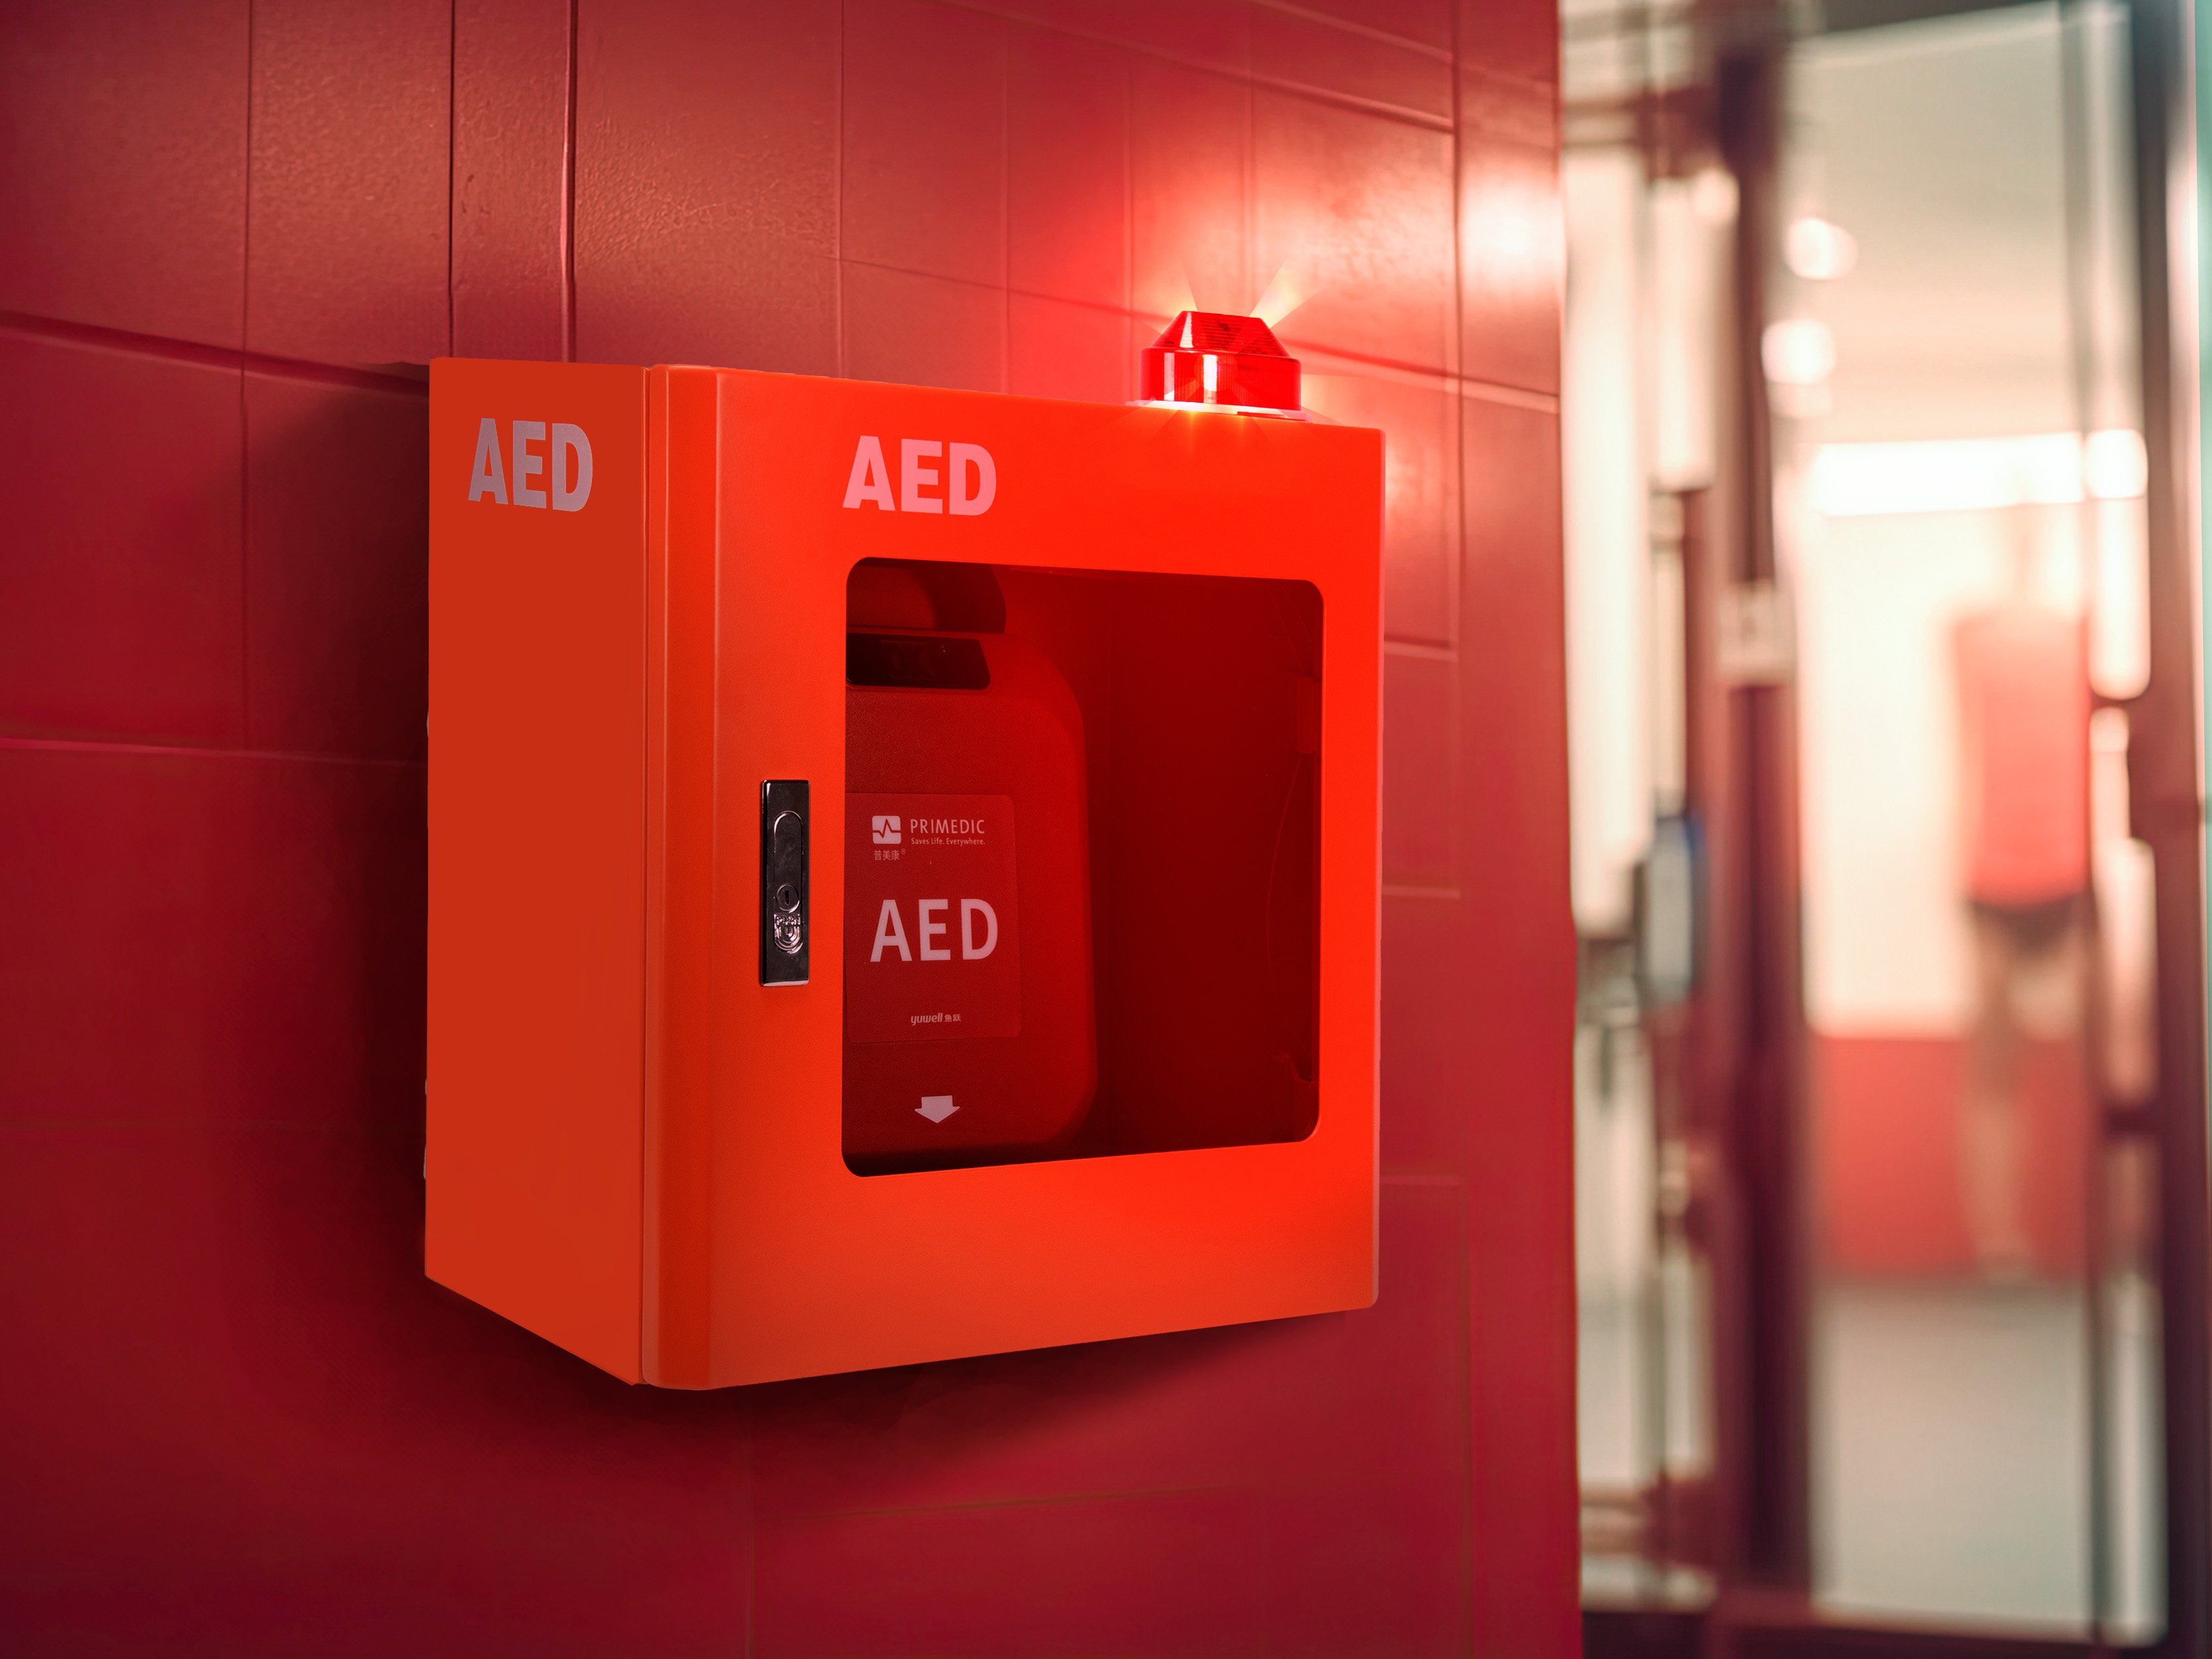 ตู้เก็บเครื่องกระตุกหัวใจอัตโนมัติ AED มีสัญญาณไฟและเสียงแจ้งเตือน (แบบแขวนผนัง)